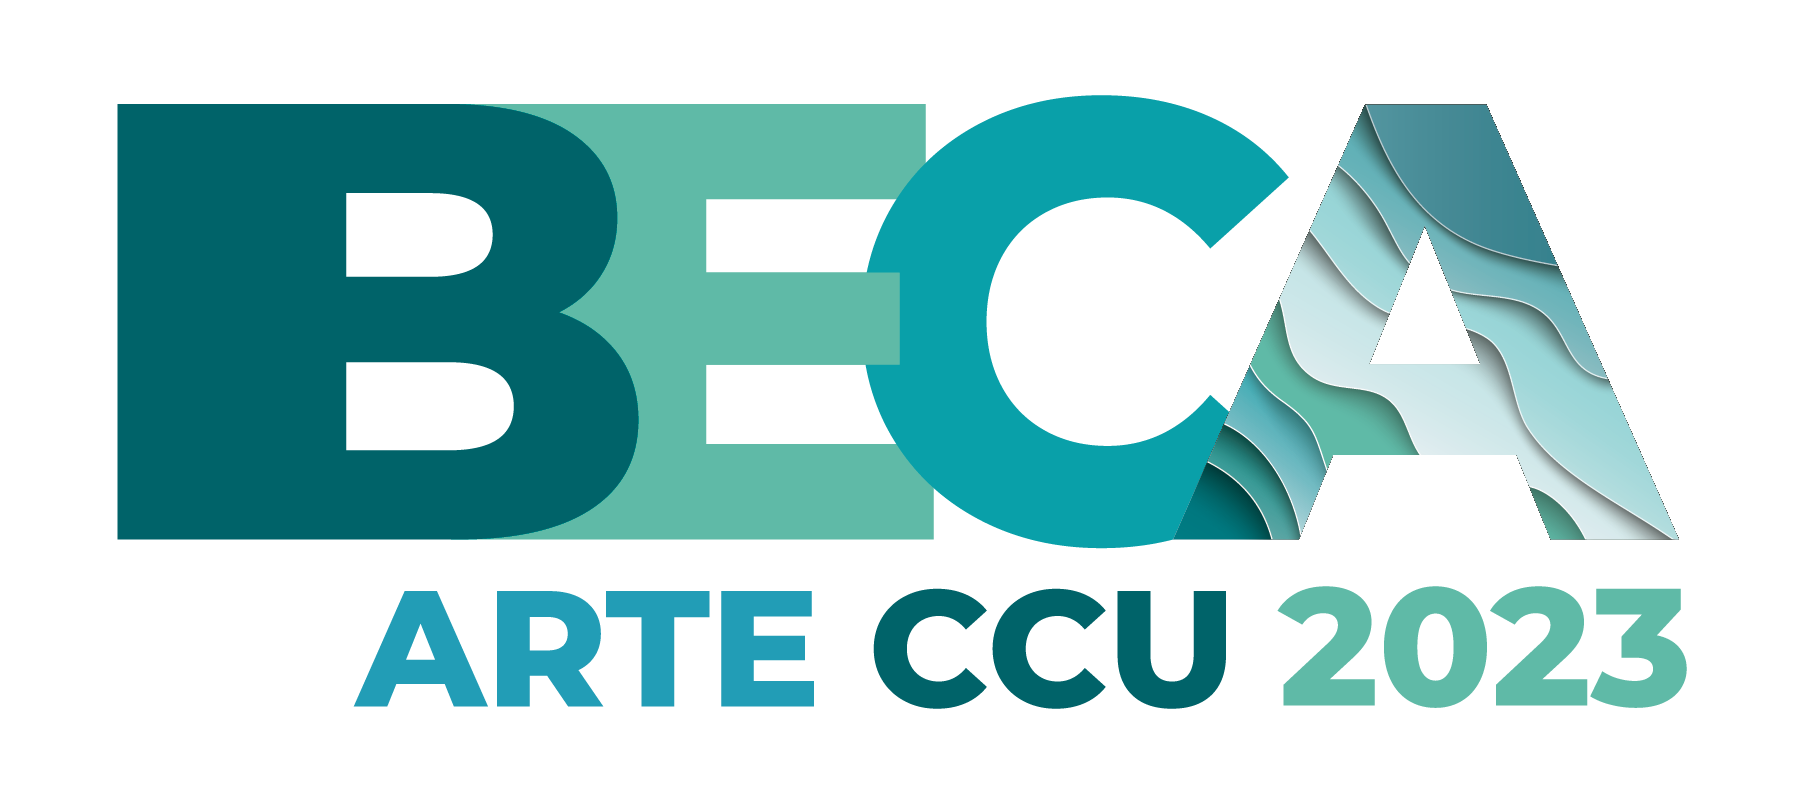 Beca-Arte-CCU-2023